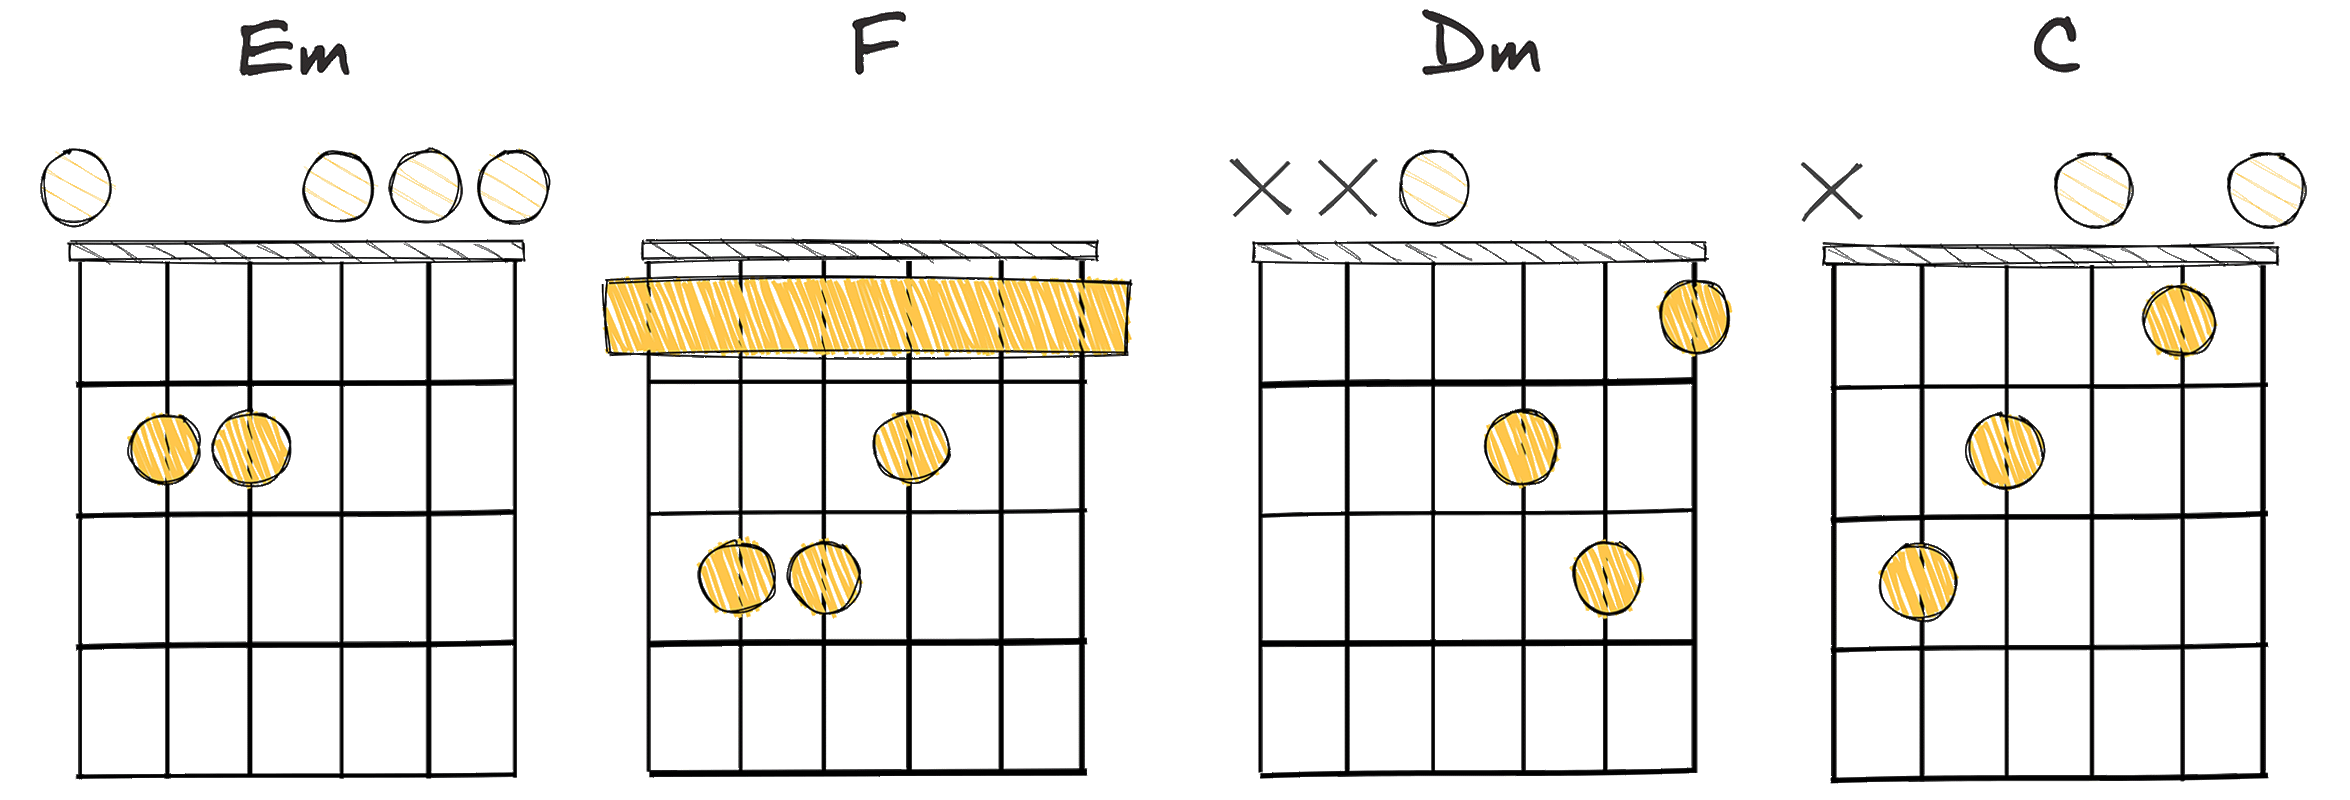 iii - IV - ii - I (3 - 4 - 2 - 1) chords diagram